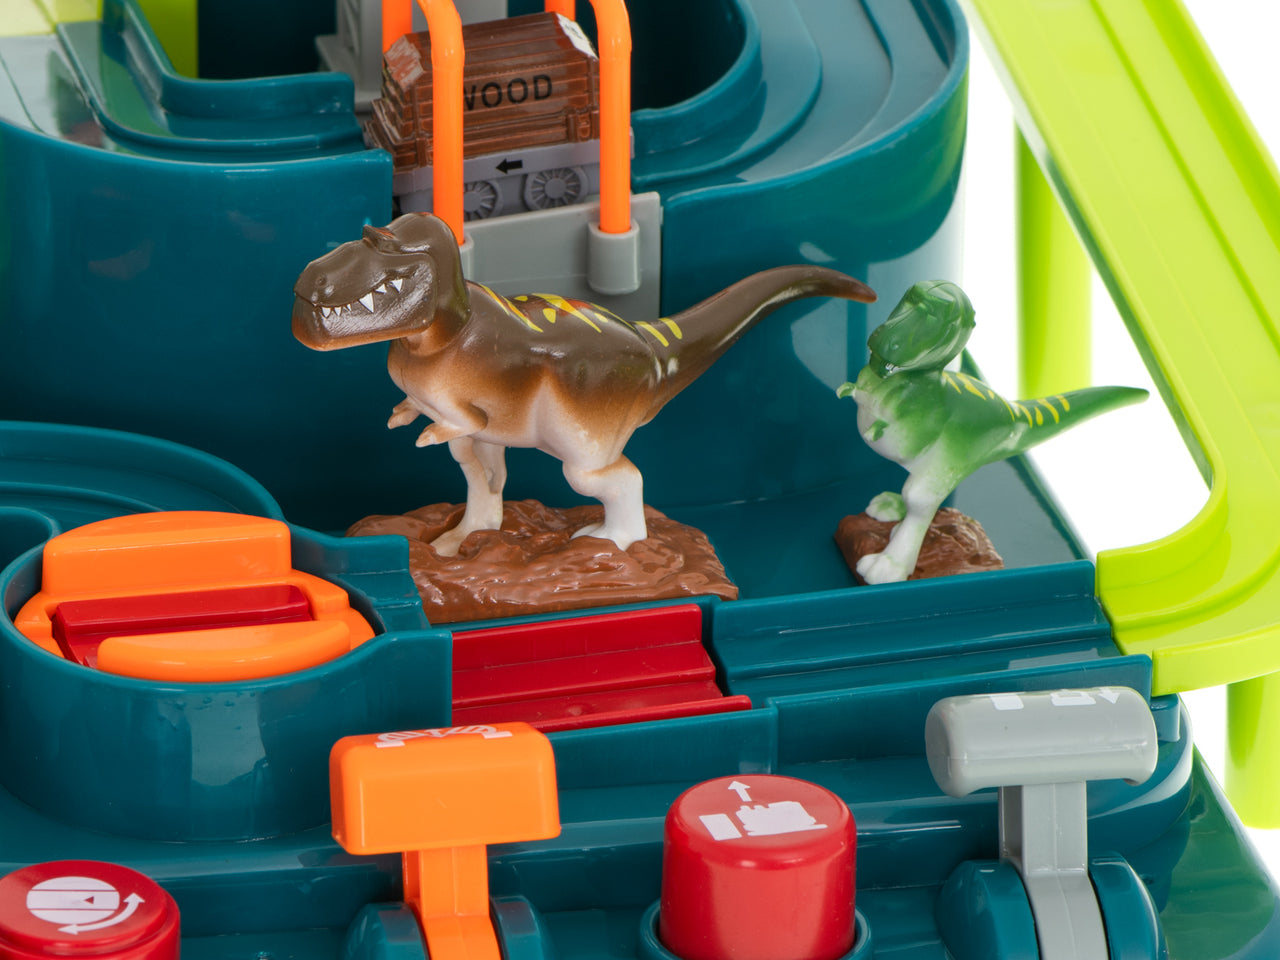 Ariko autostad dinosaurus XL - mijnwagons - 3 dinosaurussen - kraan - werkt zonder batterijen - Mechanische Racebaan